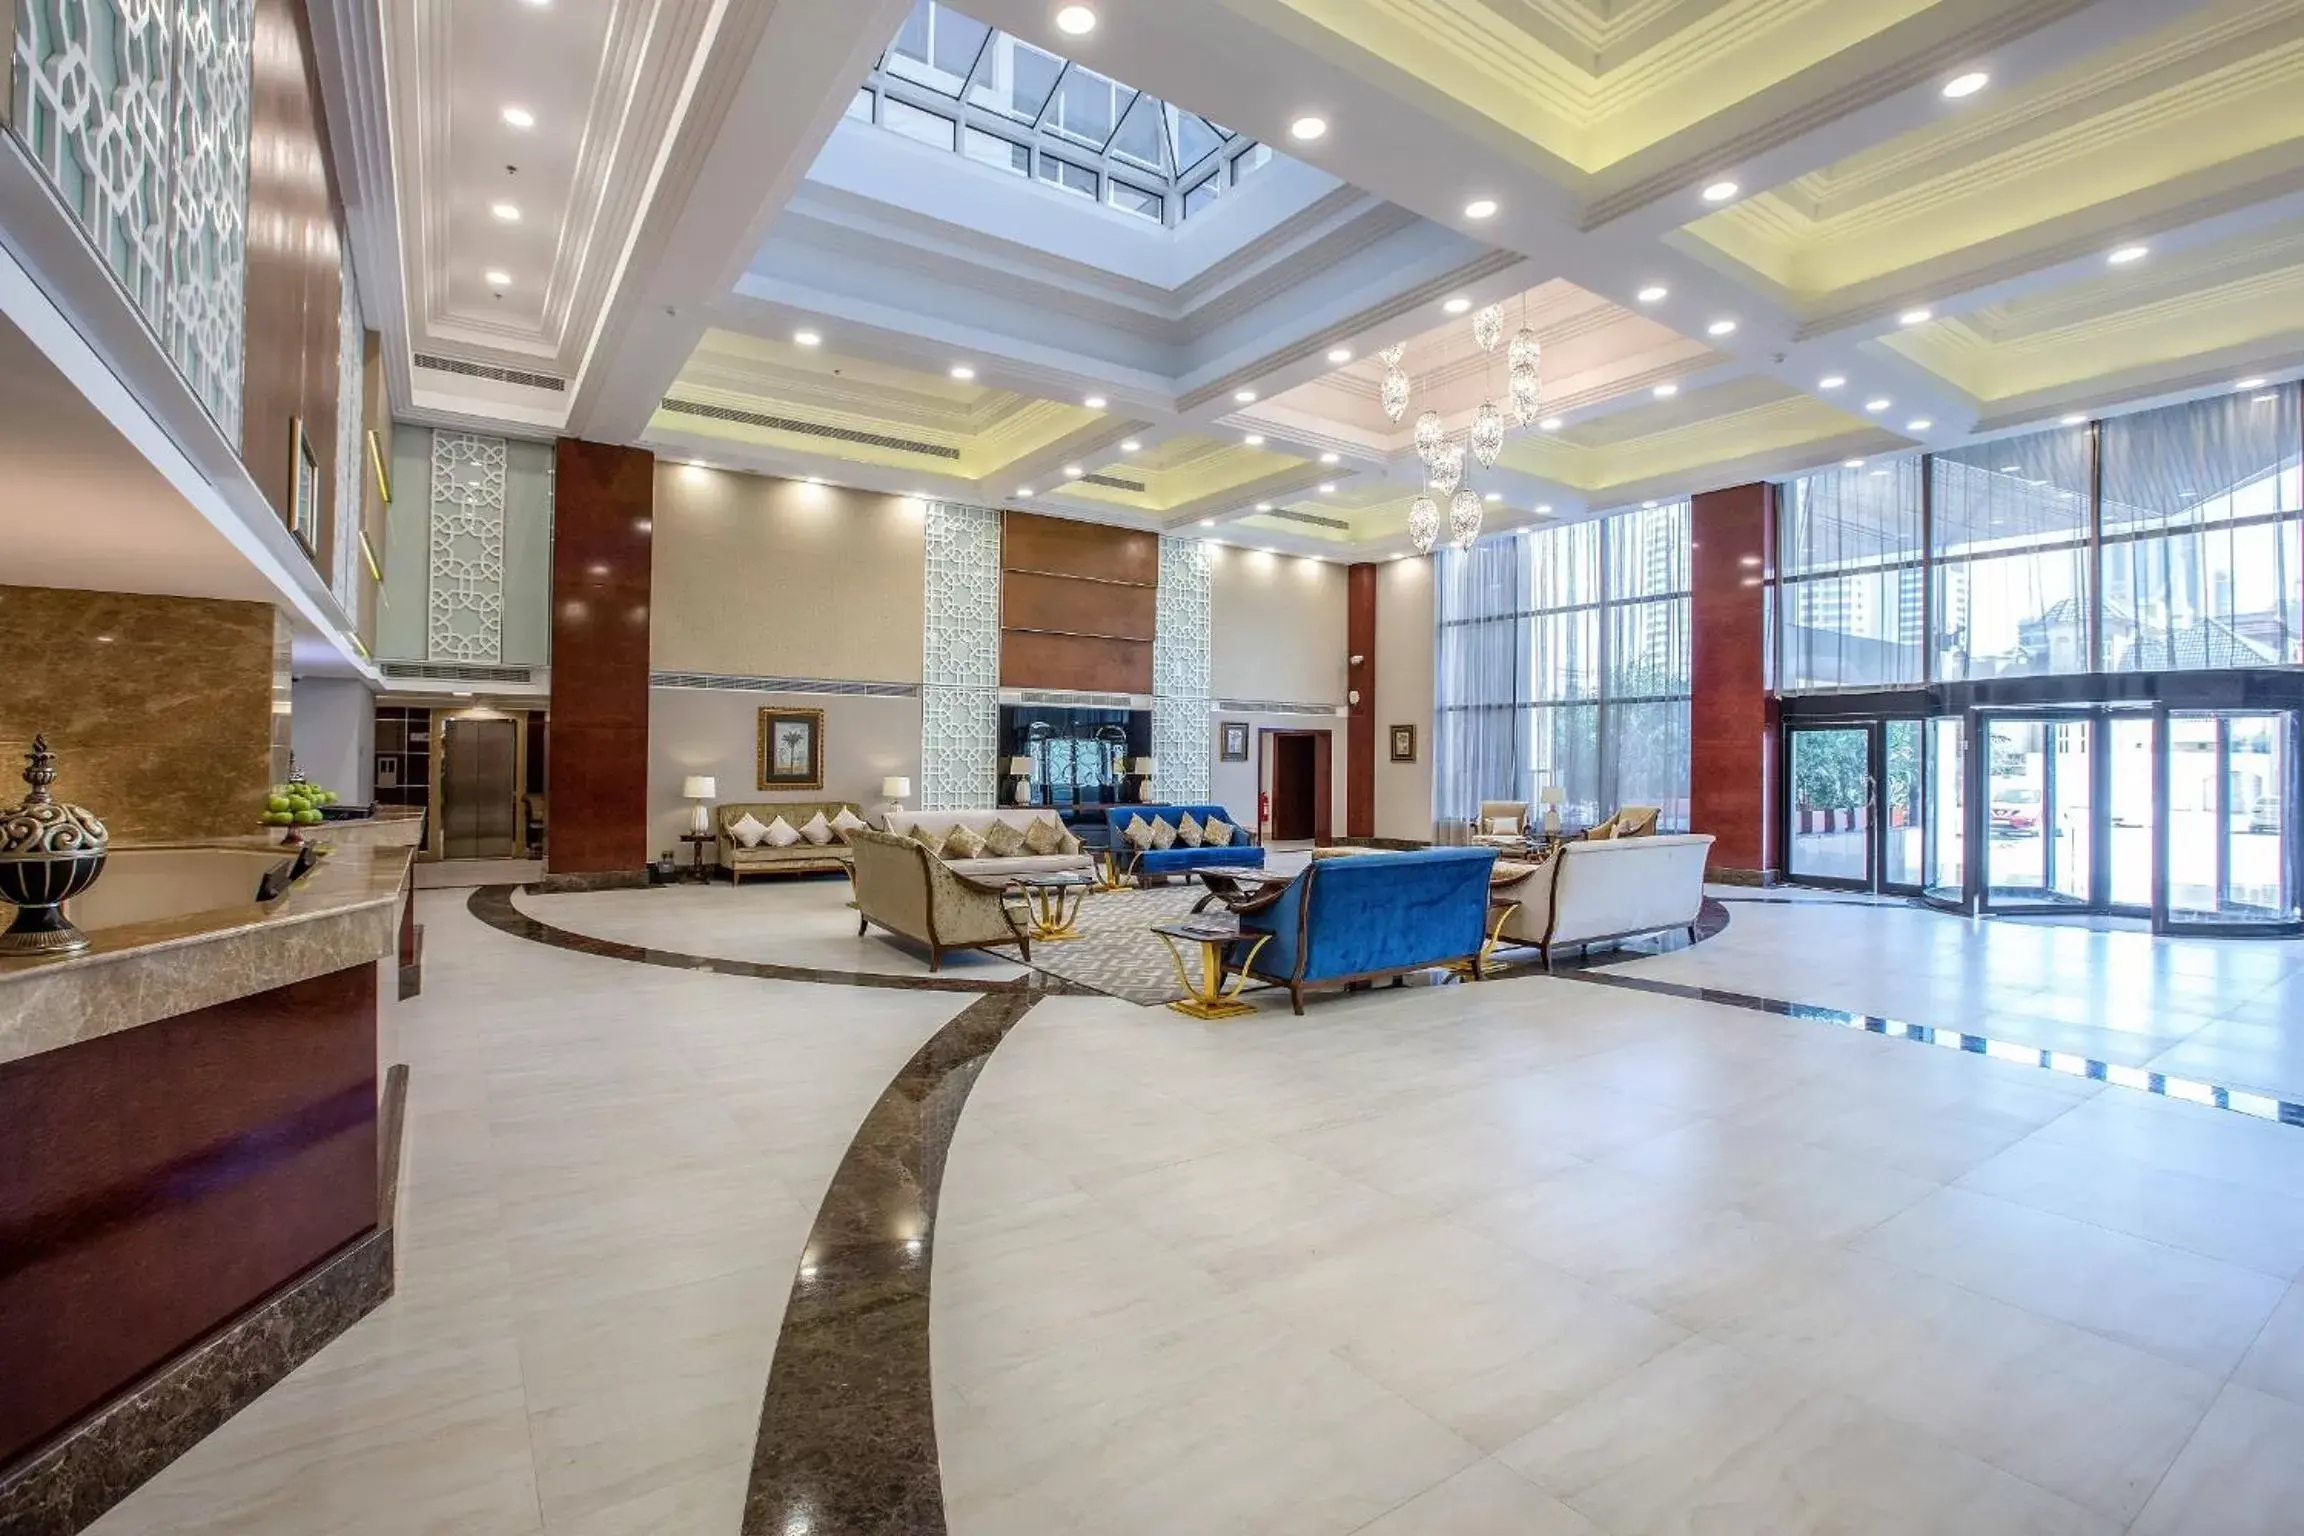 Lobby or reception, Lobby/Reception in Gulf Court Hotel